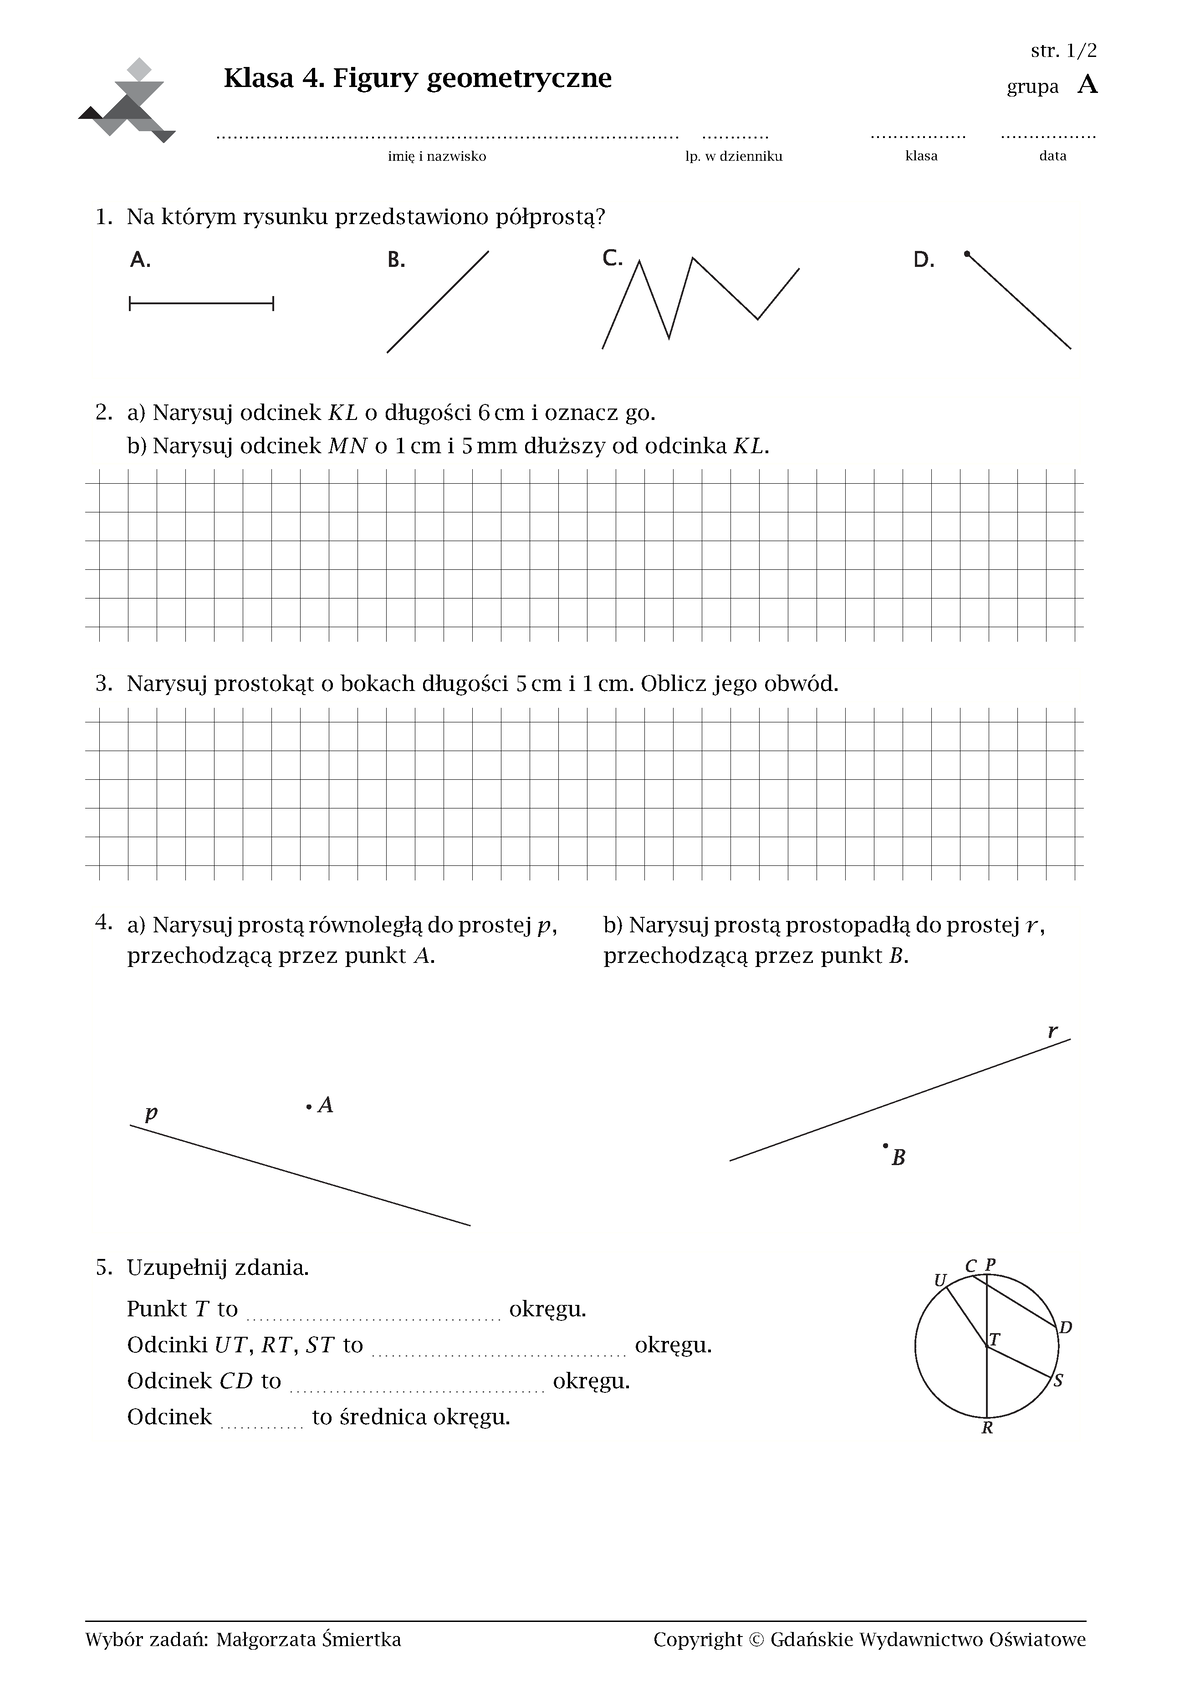 Sprawdzian Z Matematyki Klasa 4 Figury Geometryczne Pdf 0379